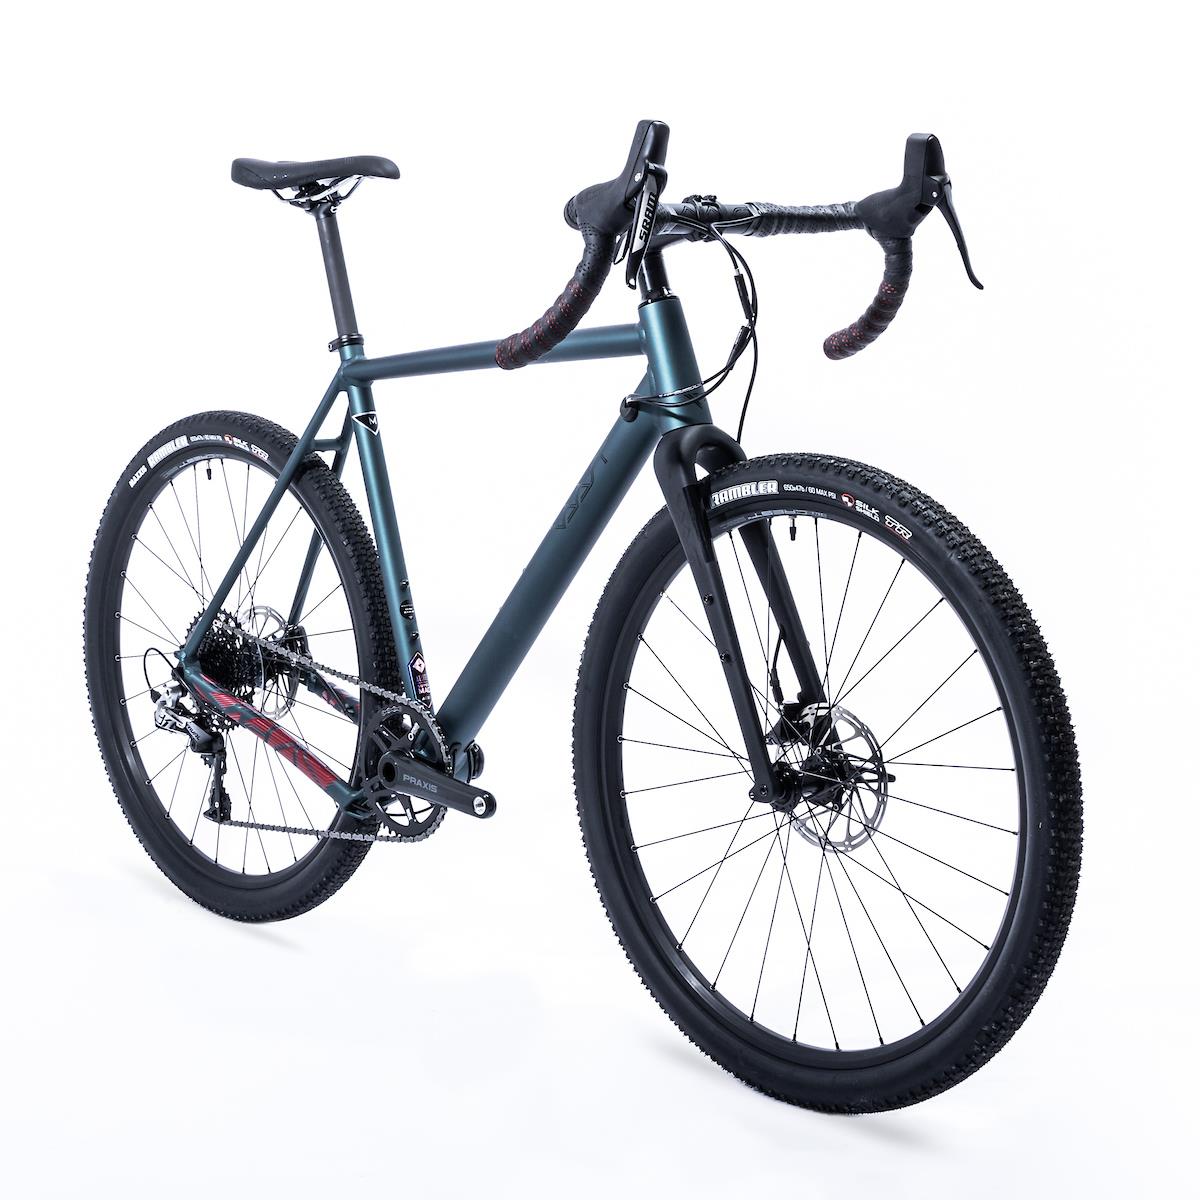 Vaast A/1 650B RIVAL AXS Велосипед, синий, L, 56 см